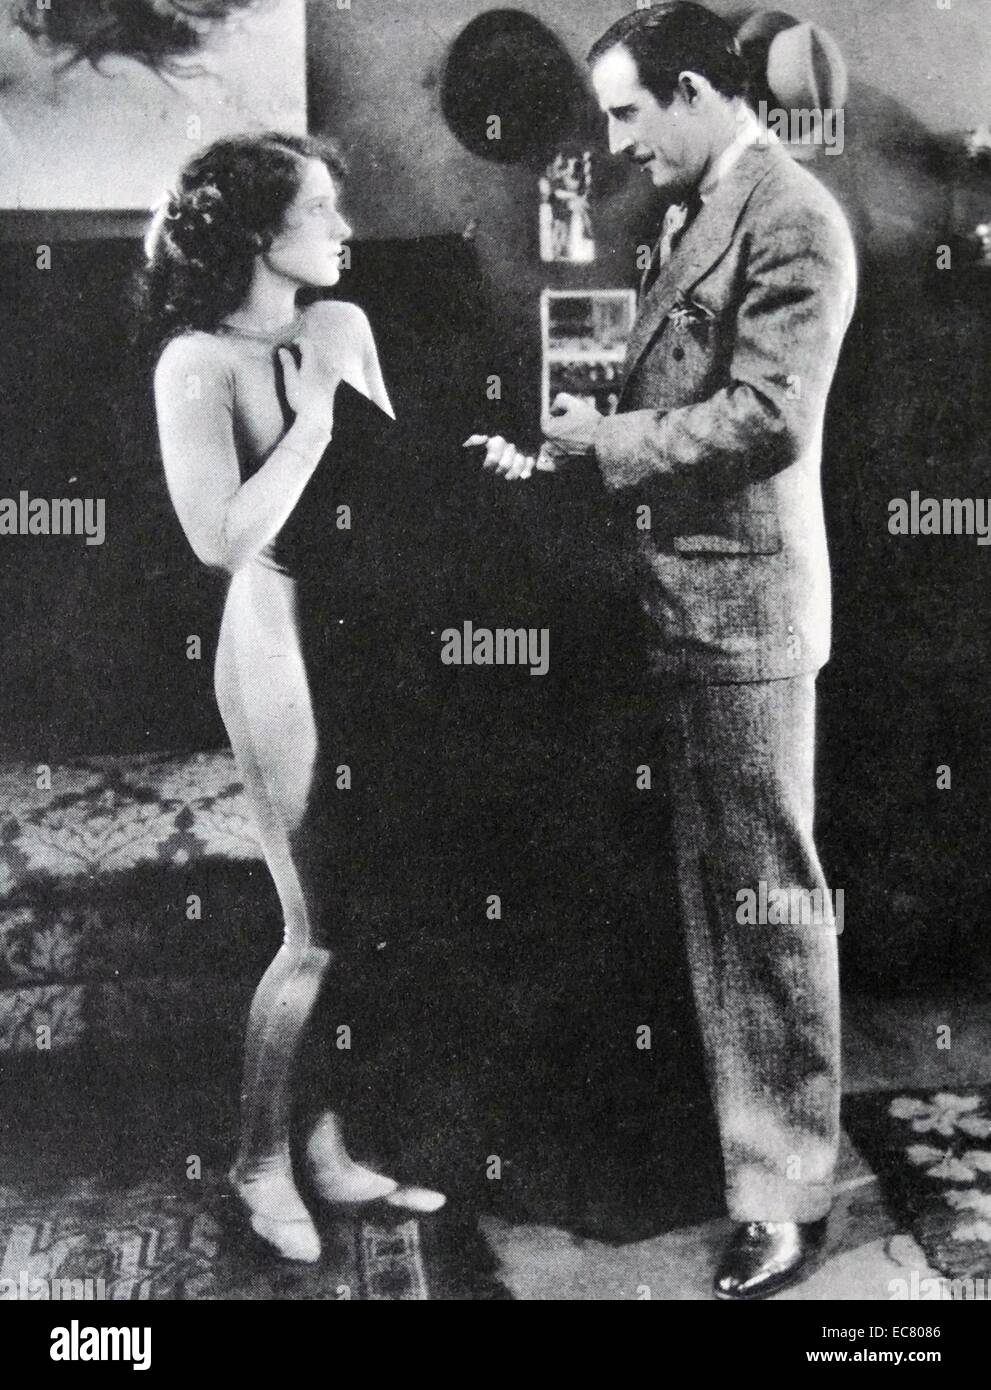 Des Teufels Circus, 1926. Nur ein Mantel steht zwischen Norma Shearer und das Schicksal dachte, schlimmer als der Tod, aber manchmal besser als Verhungern. John miljan ist des Teufels Advokat hier. Stockfoto